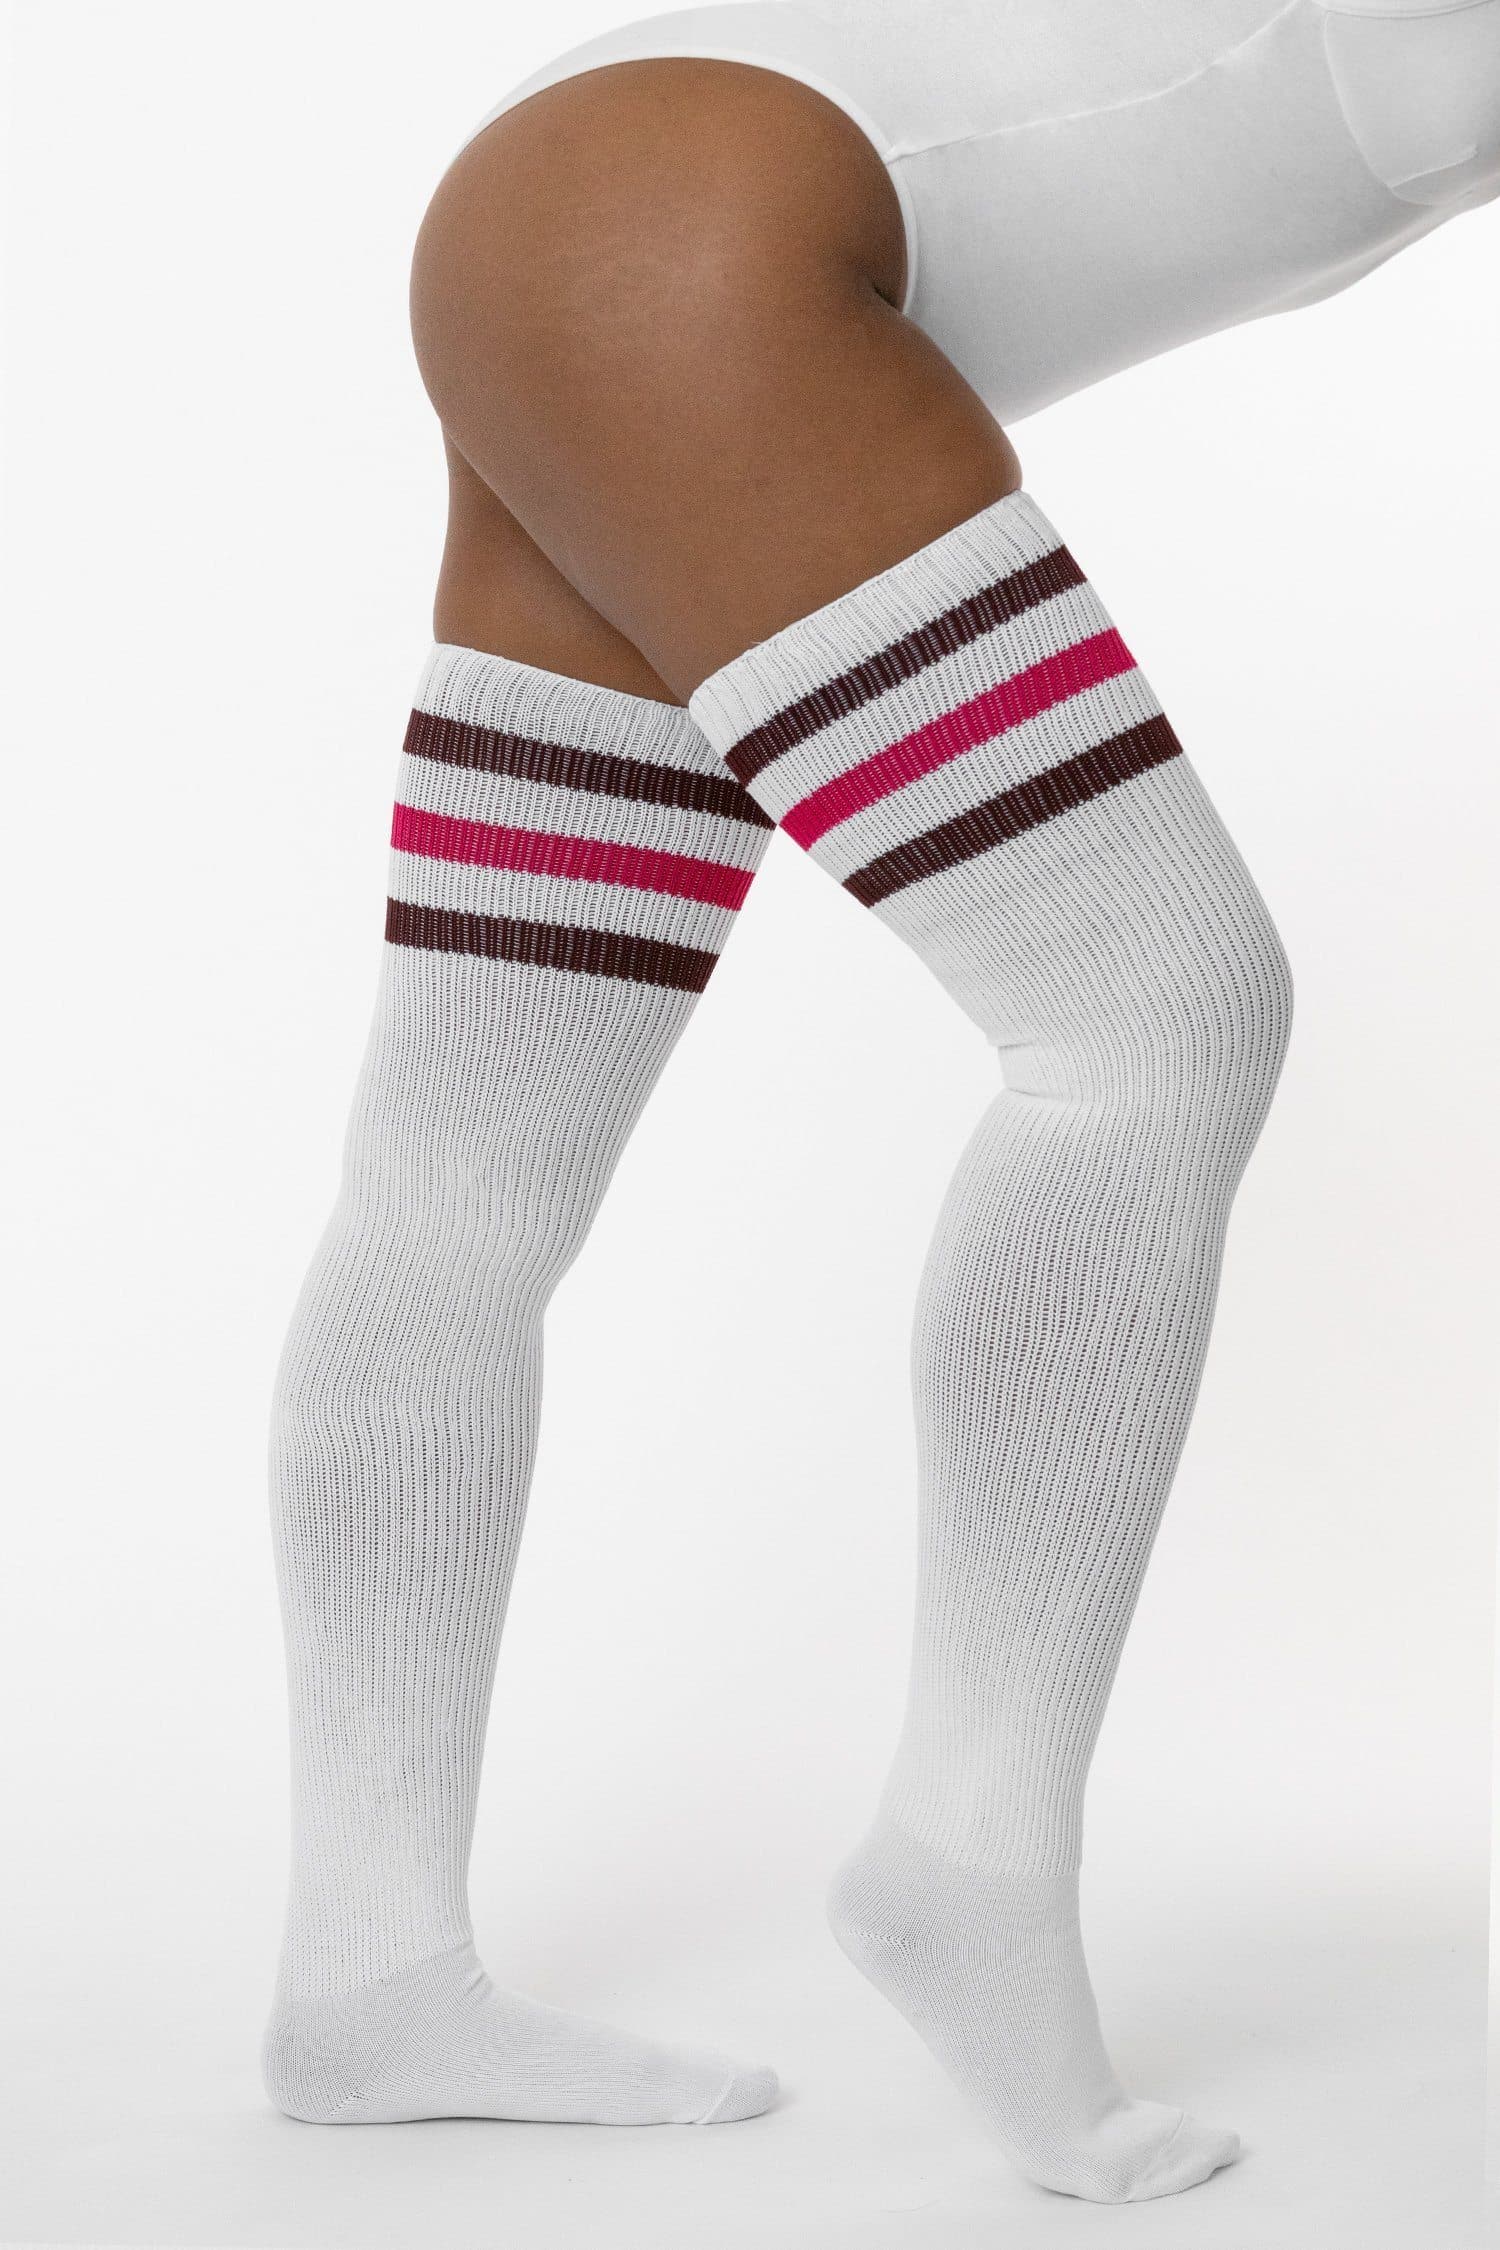 Knee High Socks for Women